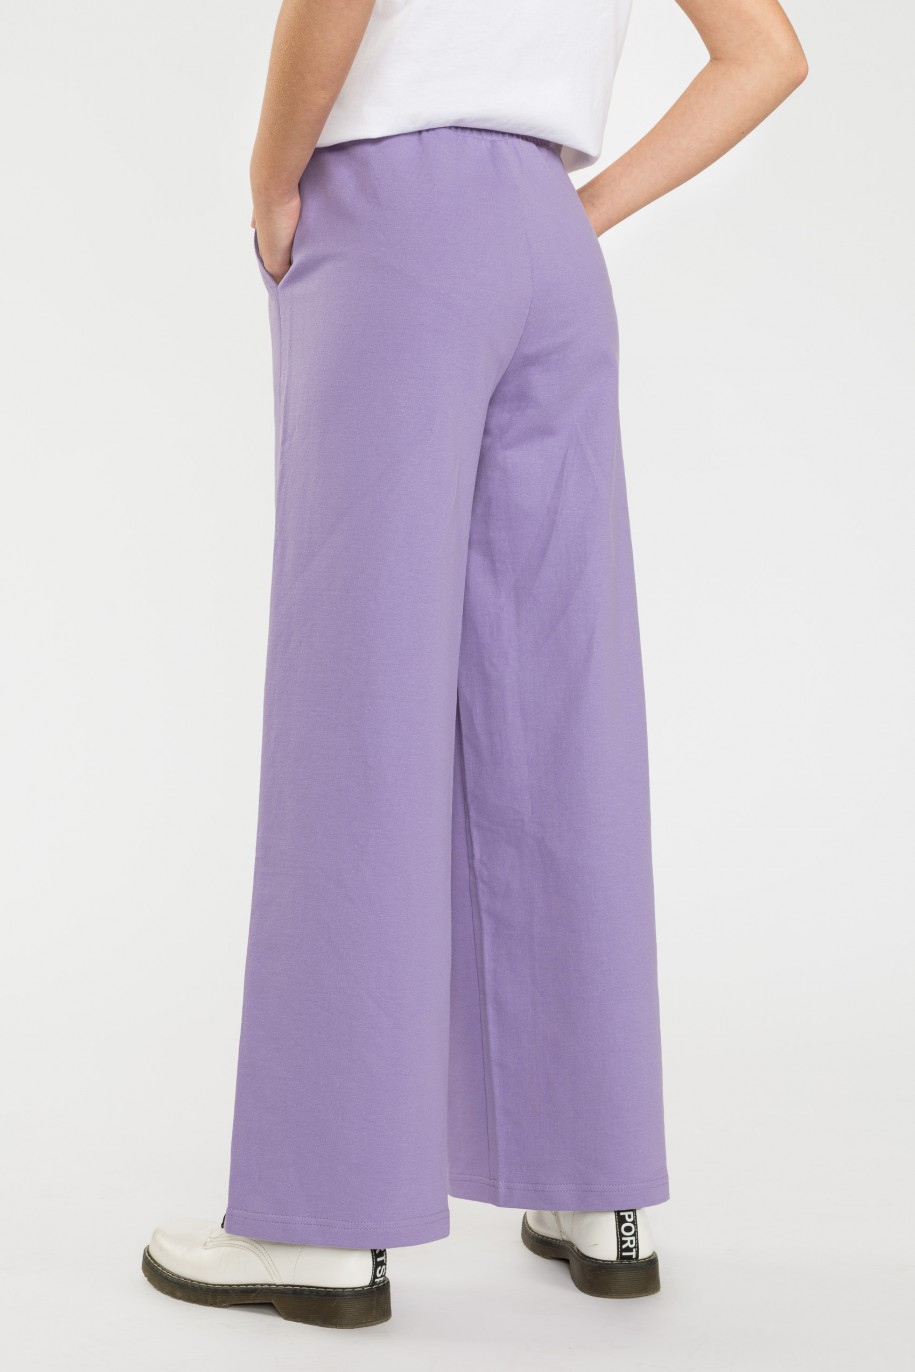 Fioletowe spodnie dresowe z szerokimi nogawkami - 40377